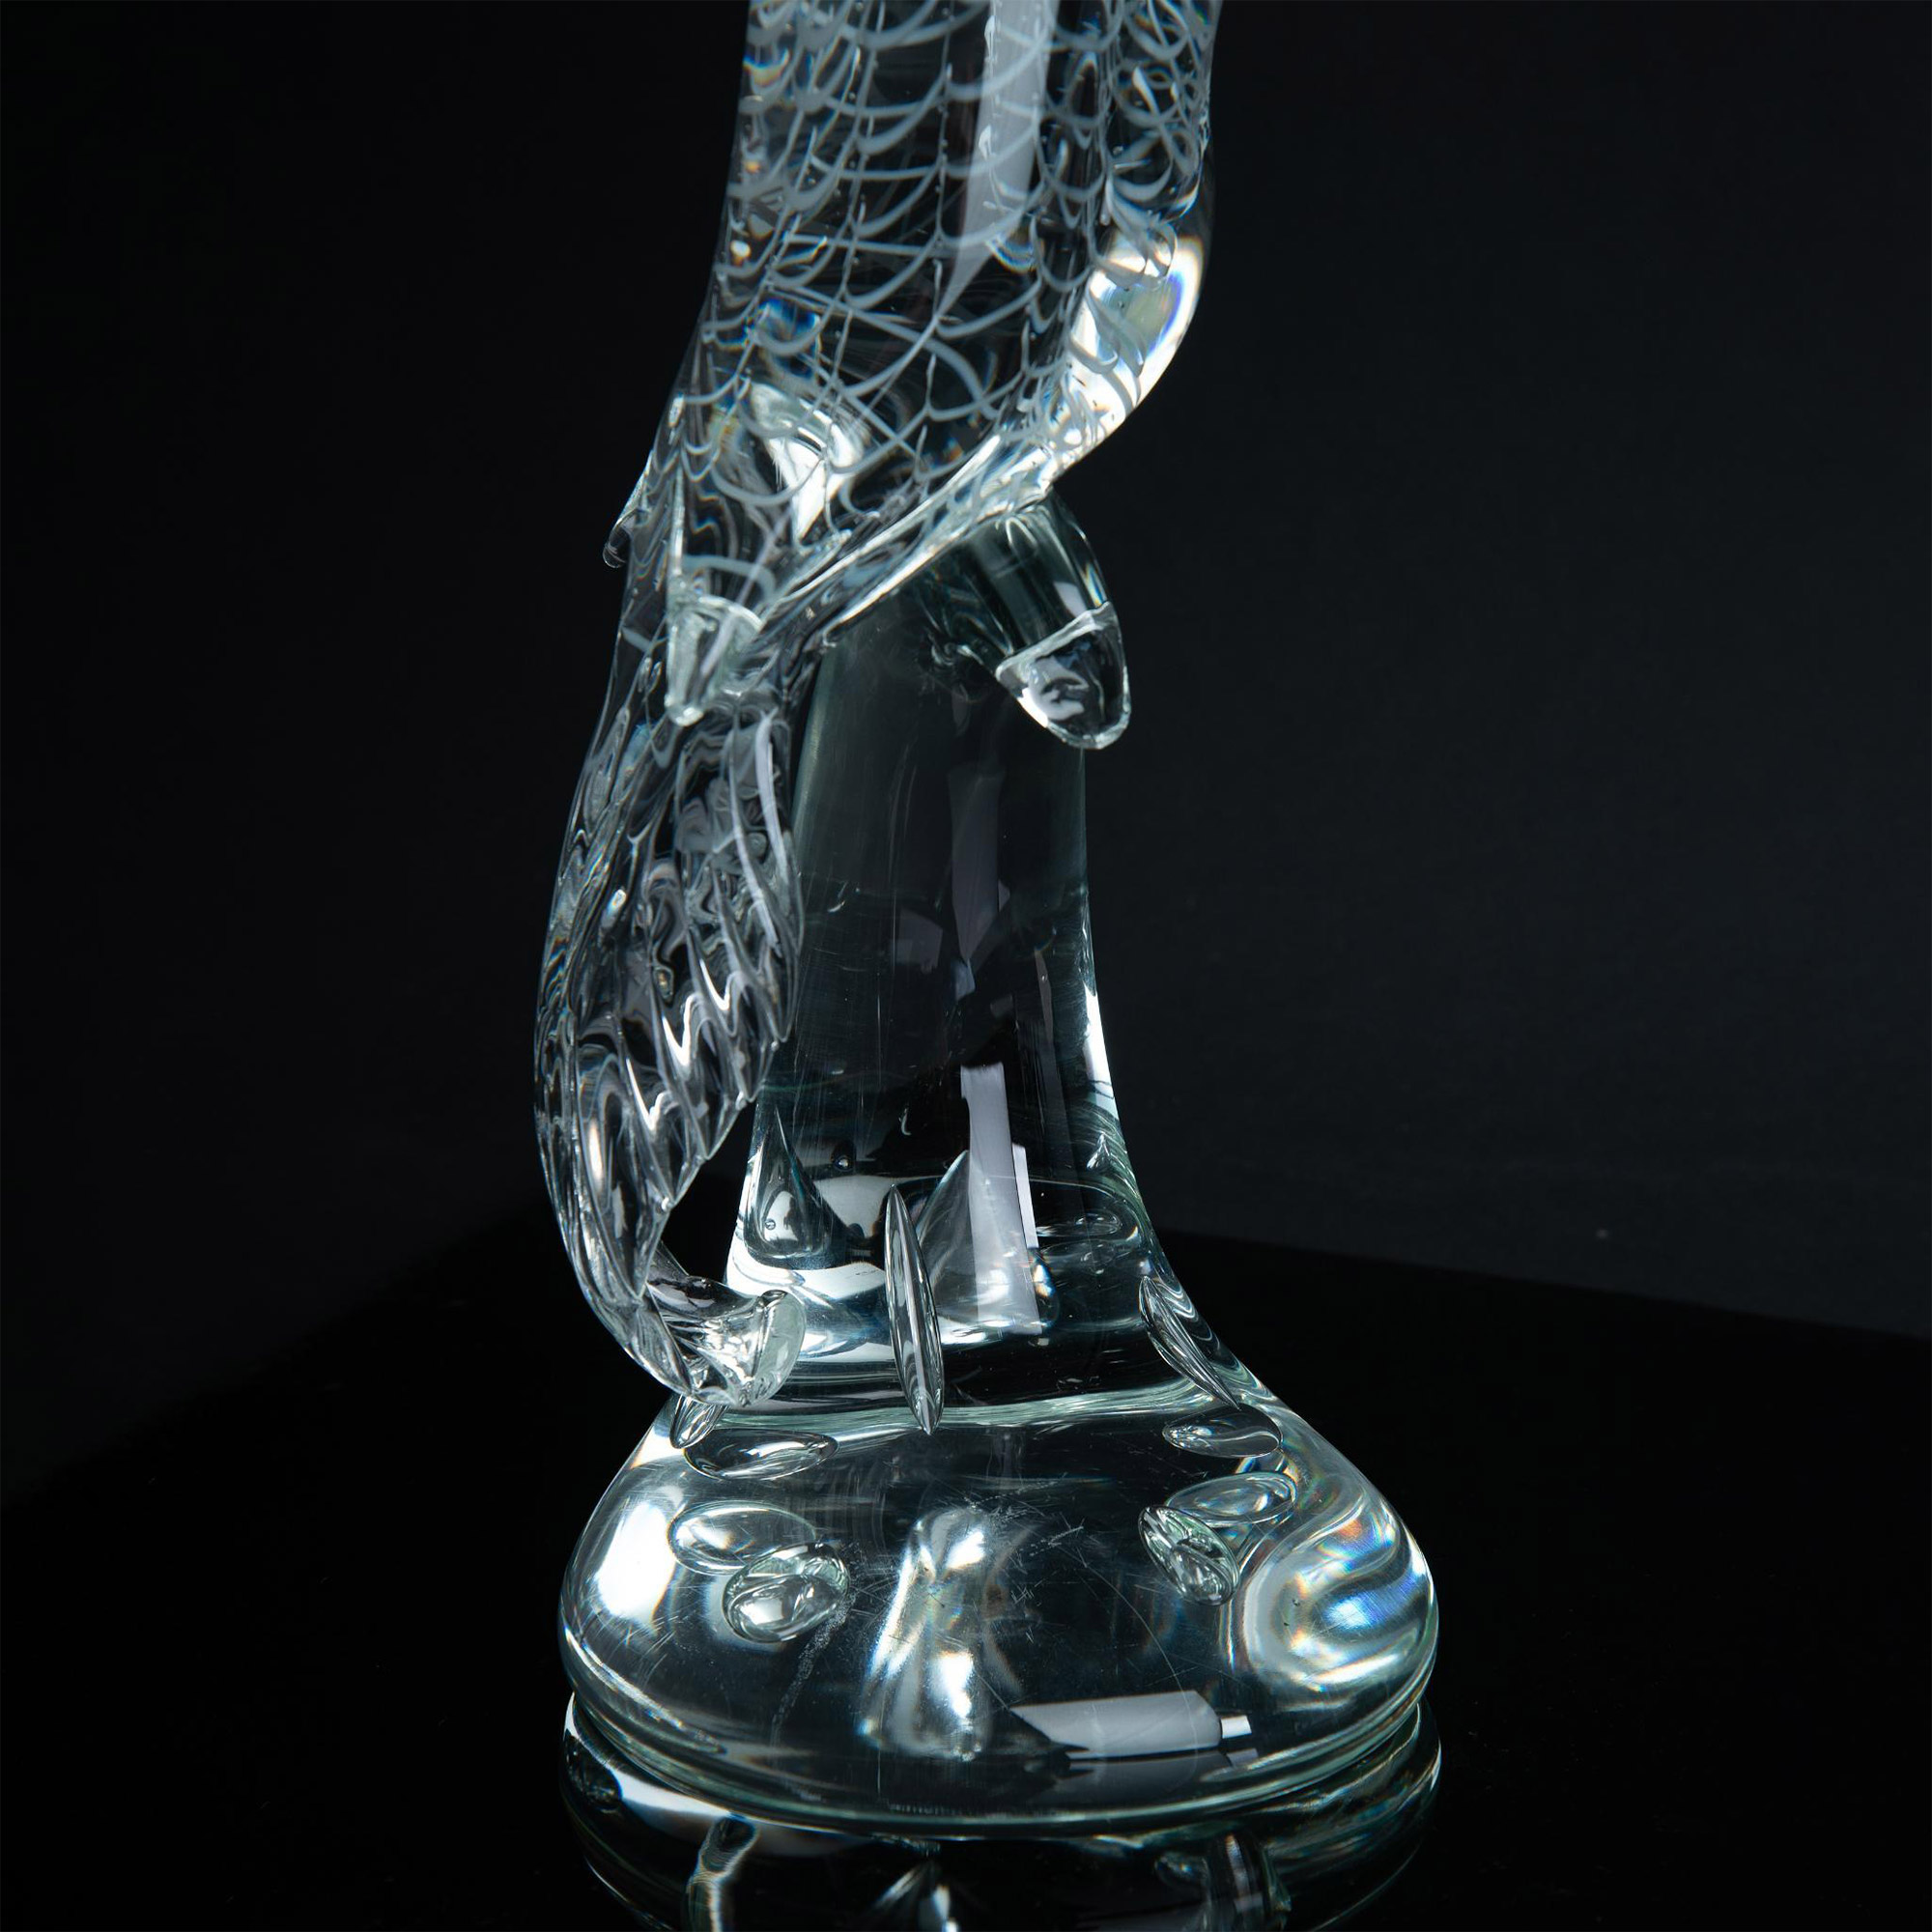 Murano Licio Zanetti Cockatoo Art Glass Sculpture, Signed - Image 3 of 6